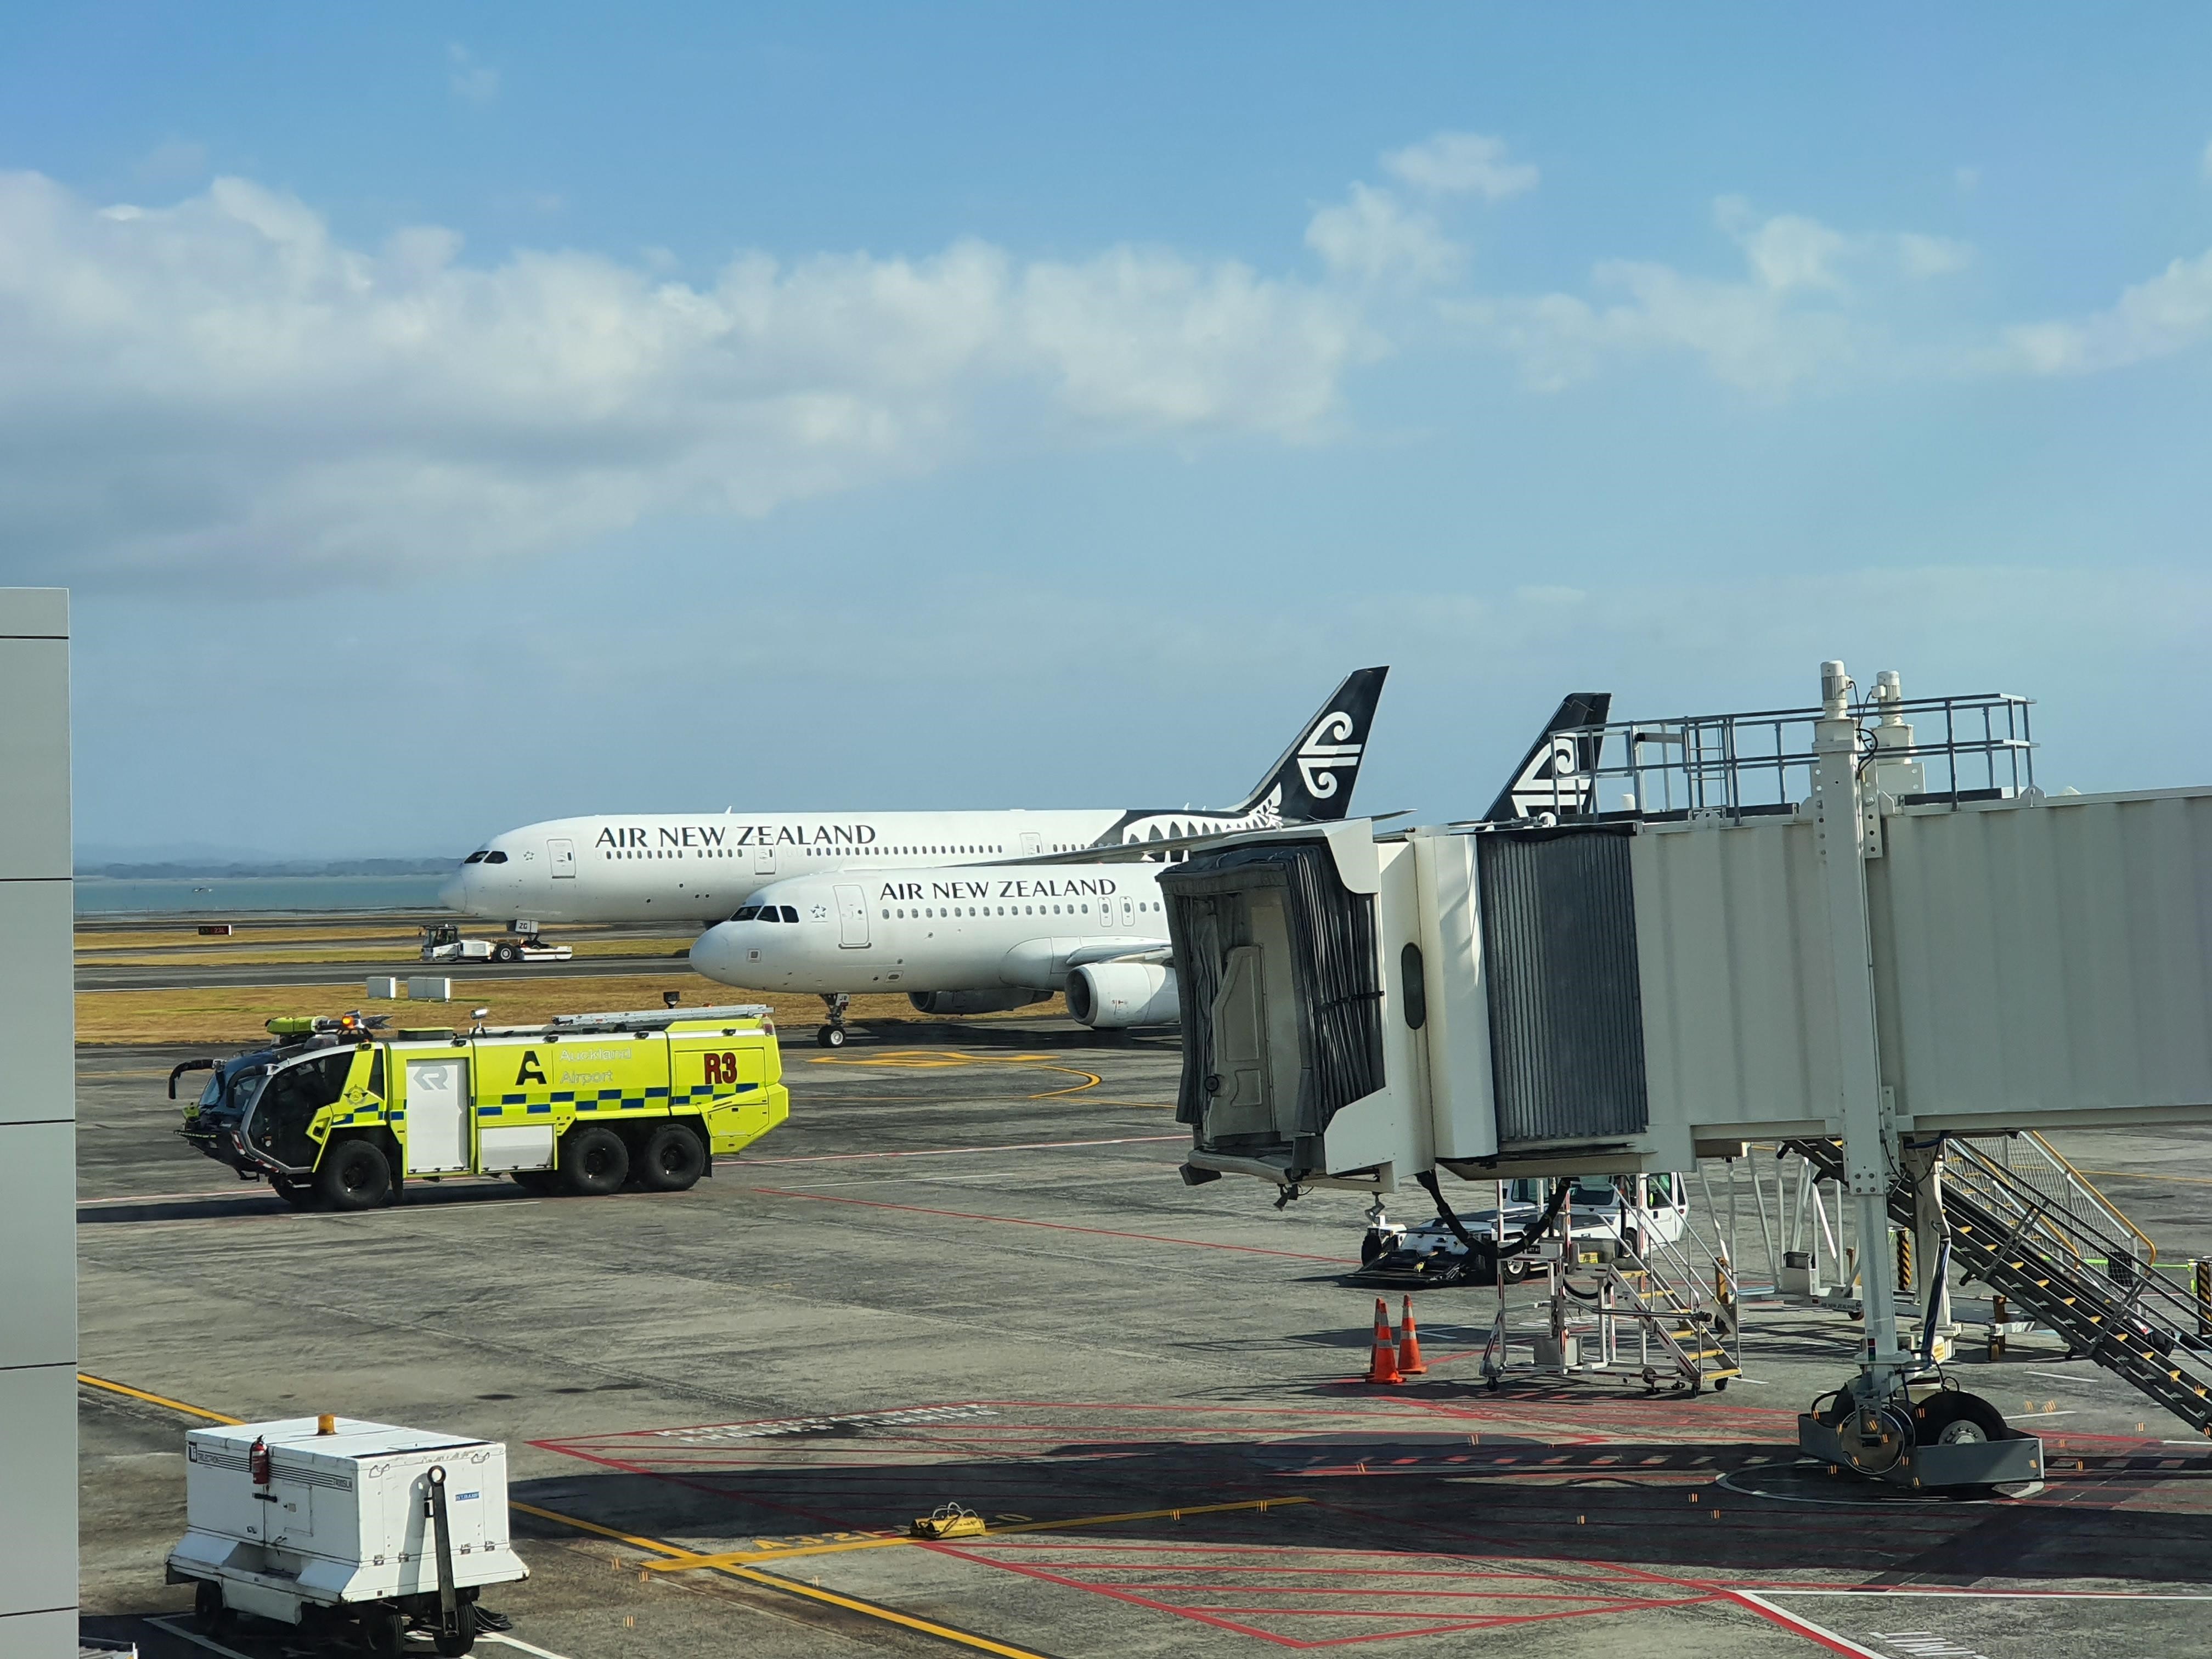 Auckland airport under fire as pilots seek 'urgent' runway maintenance fix